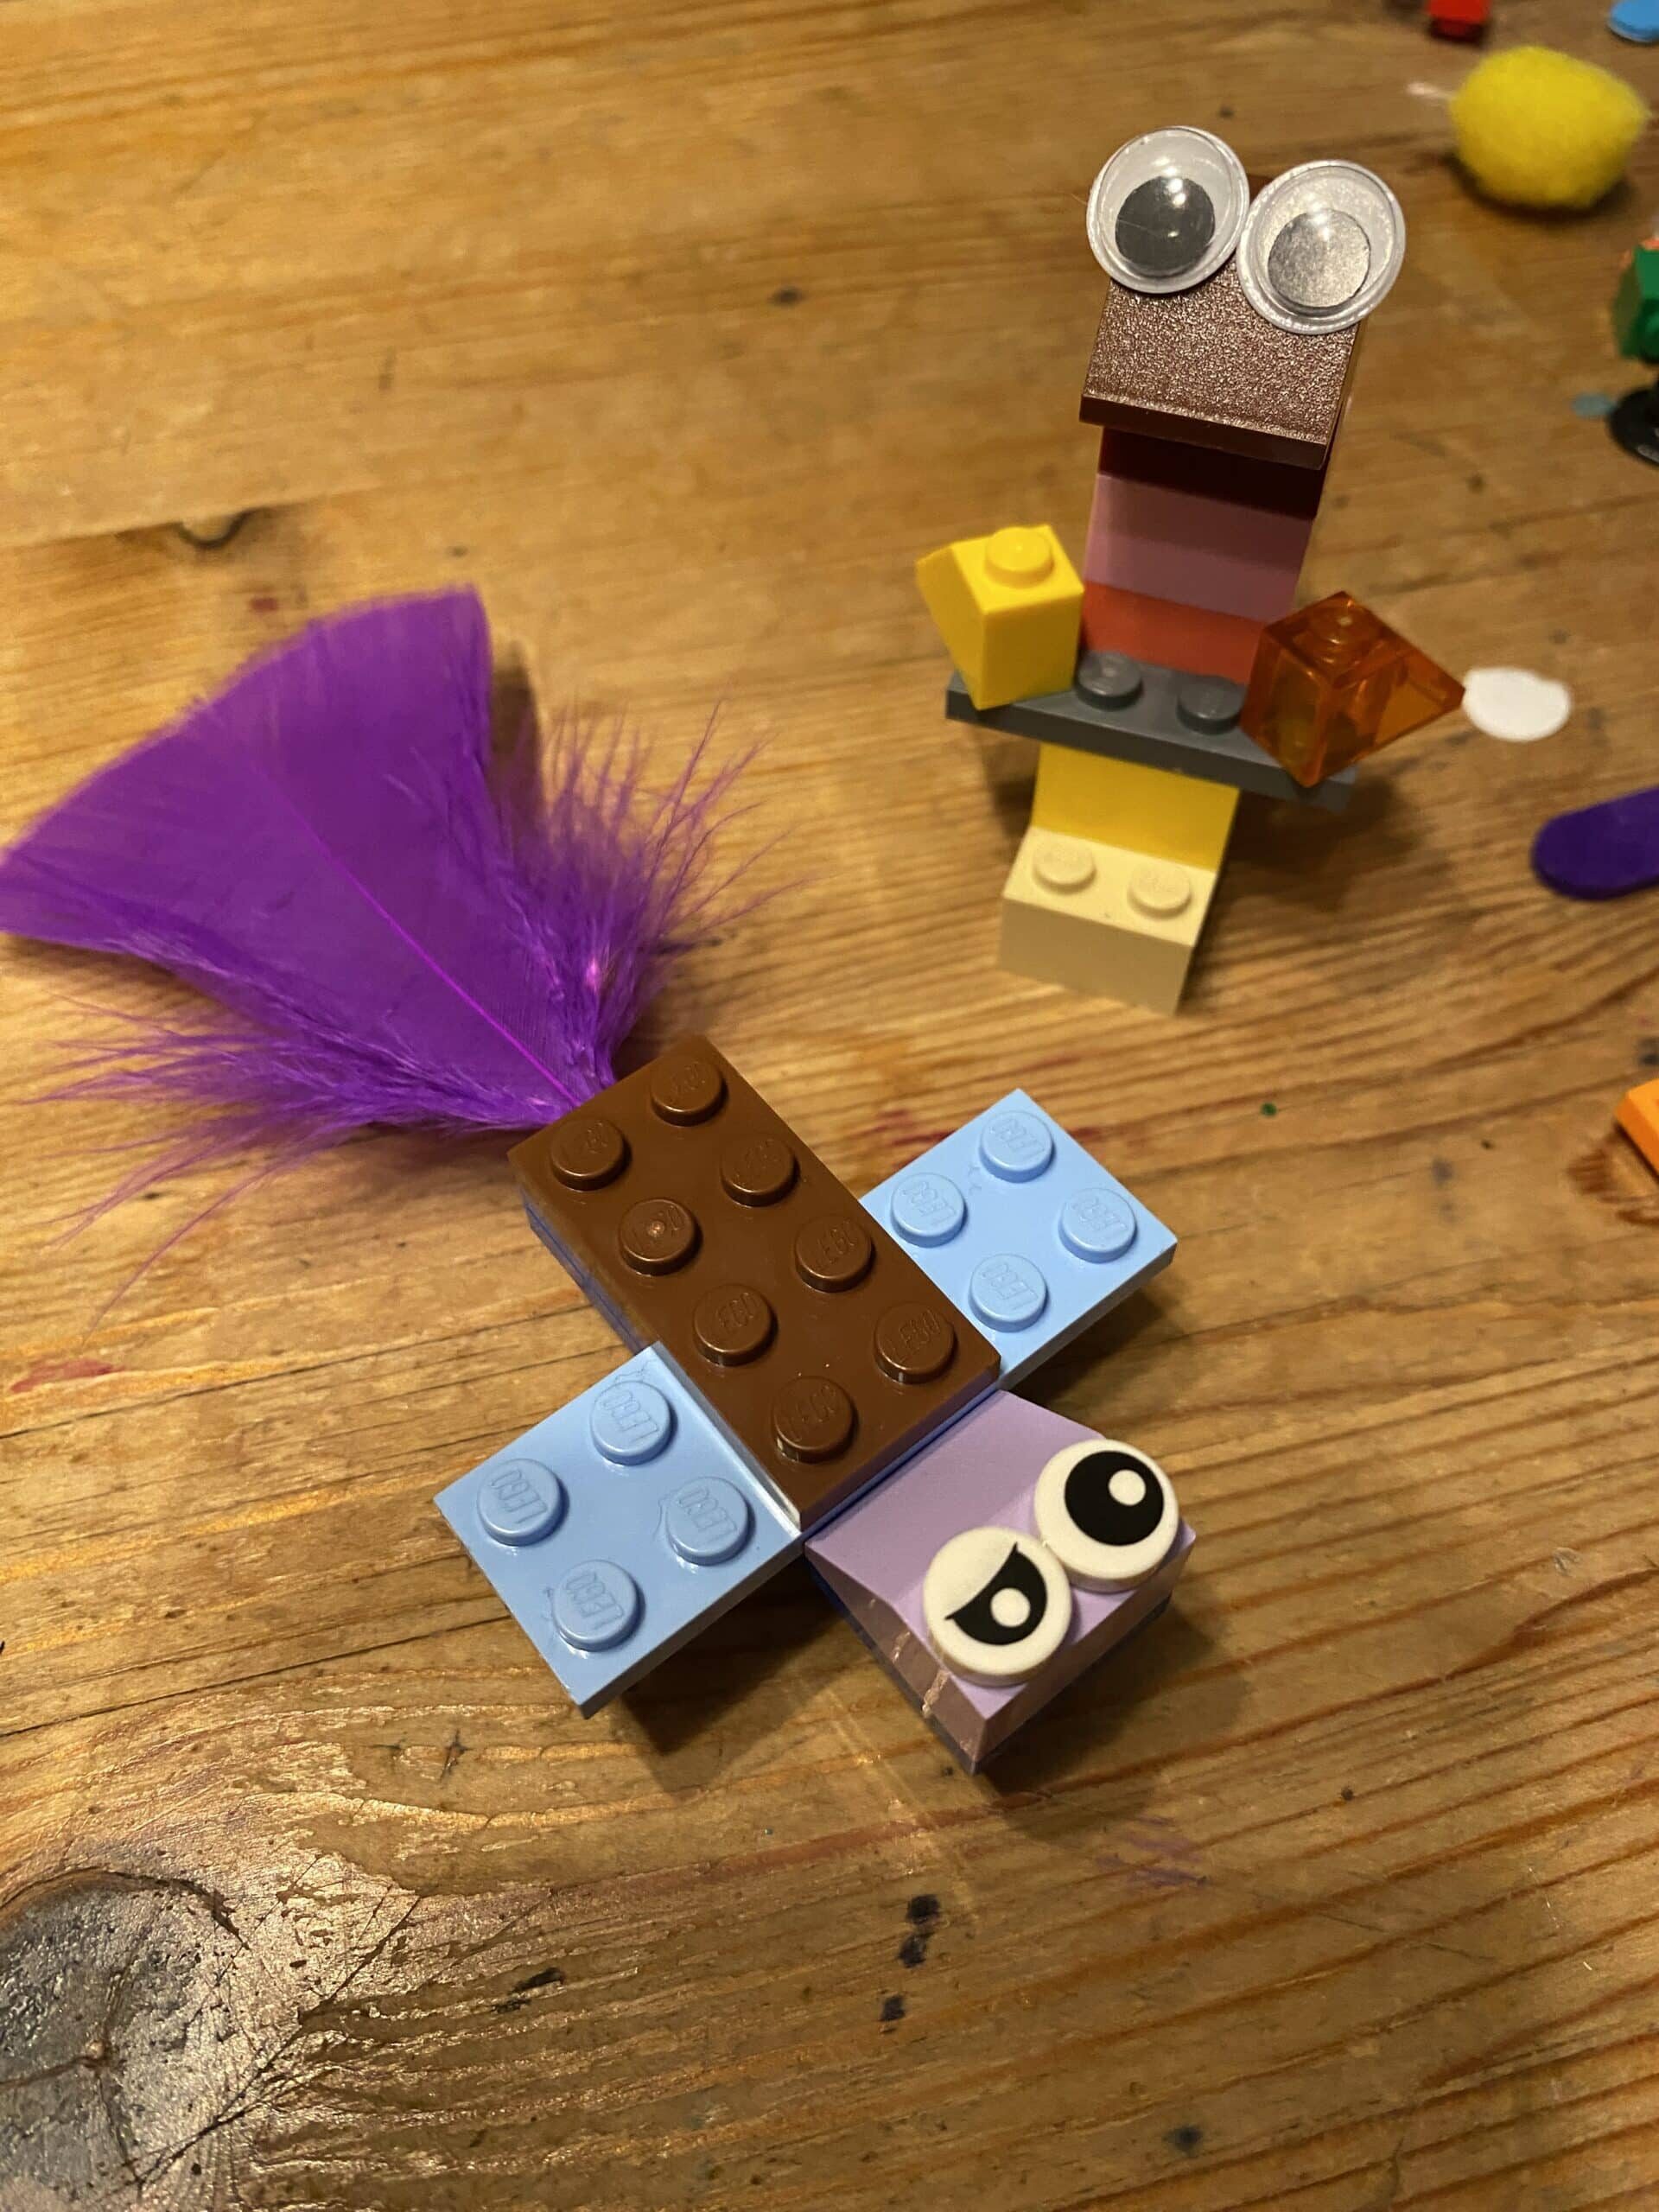 Und noch ein paar Lego Tiere bauen.